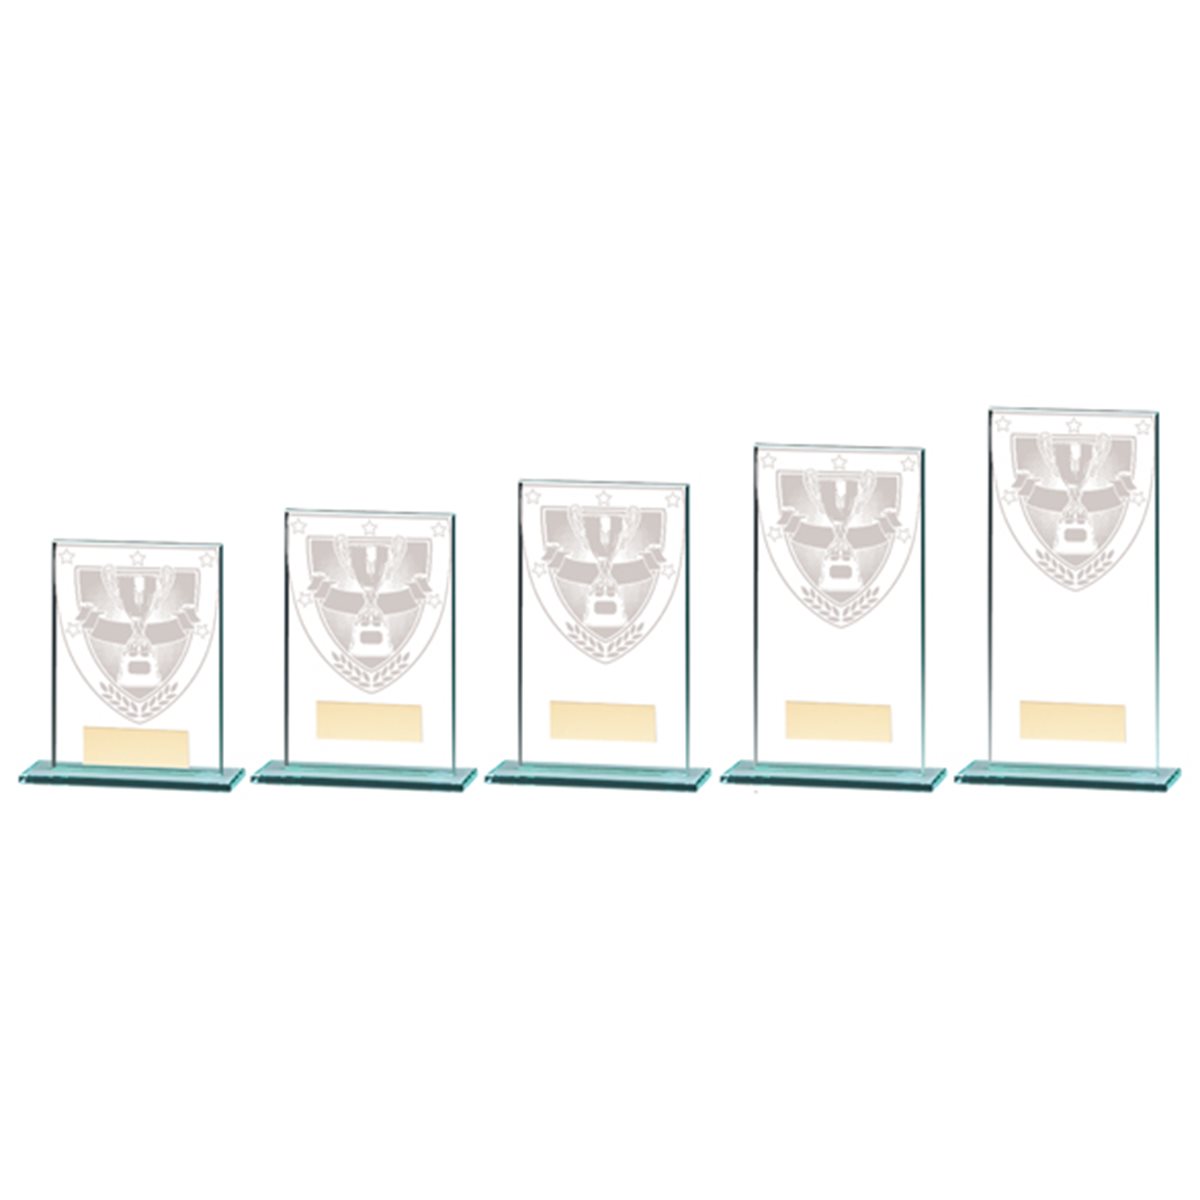 Millennium Achievement Glass Award CR20368